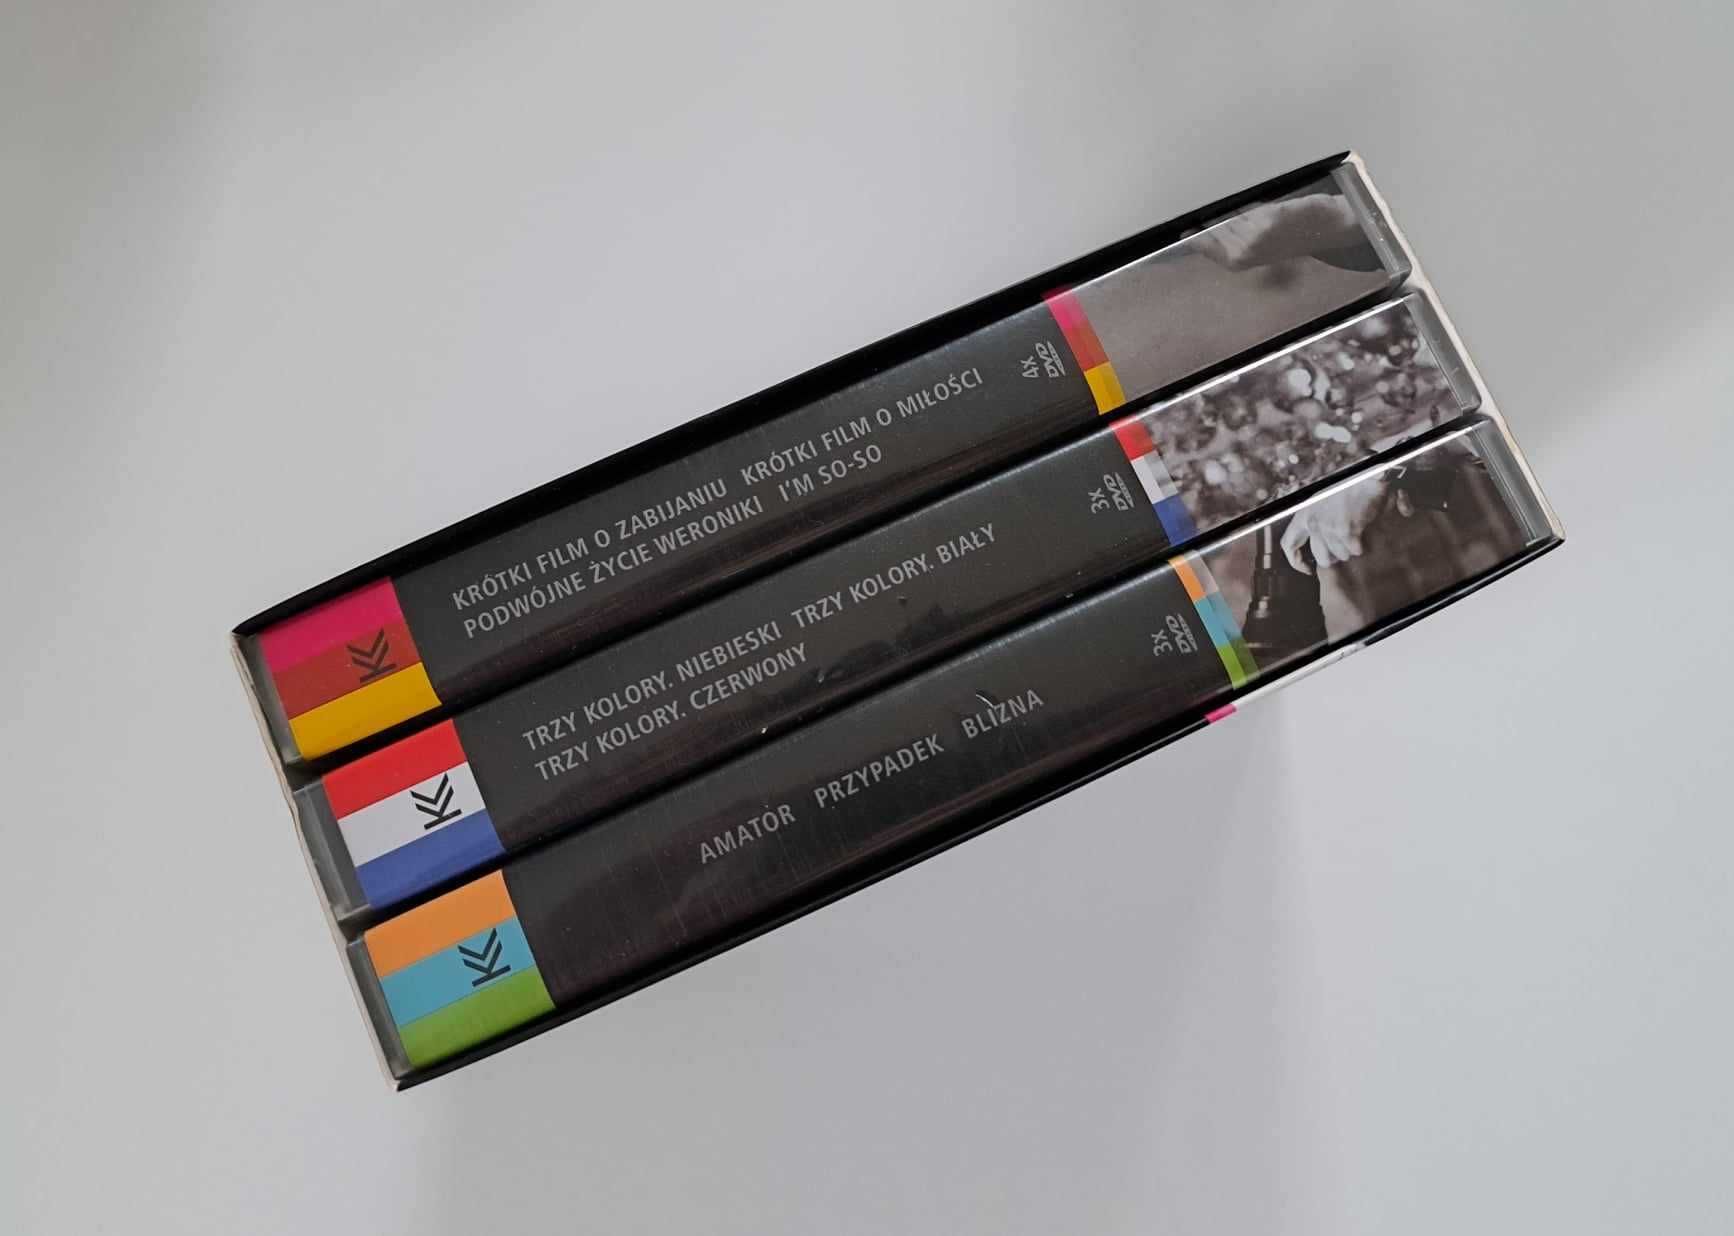 Krzysztof Kieślowski (10 DVD) - Dzieła wybrane - kolekcjonerski zestaw